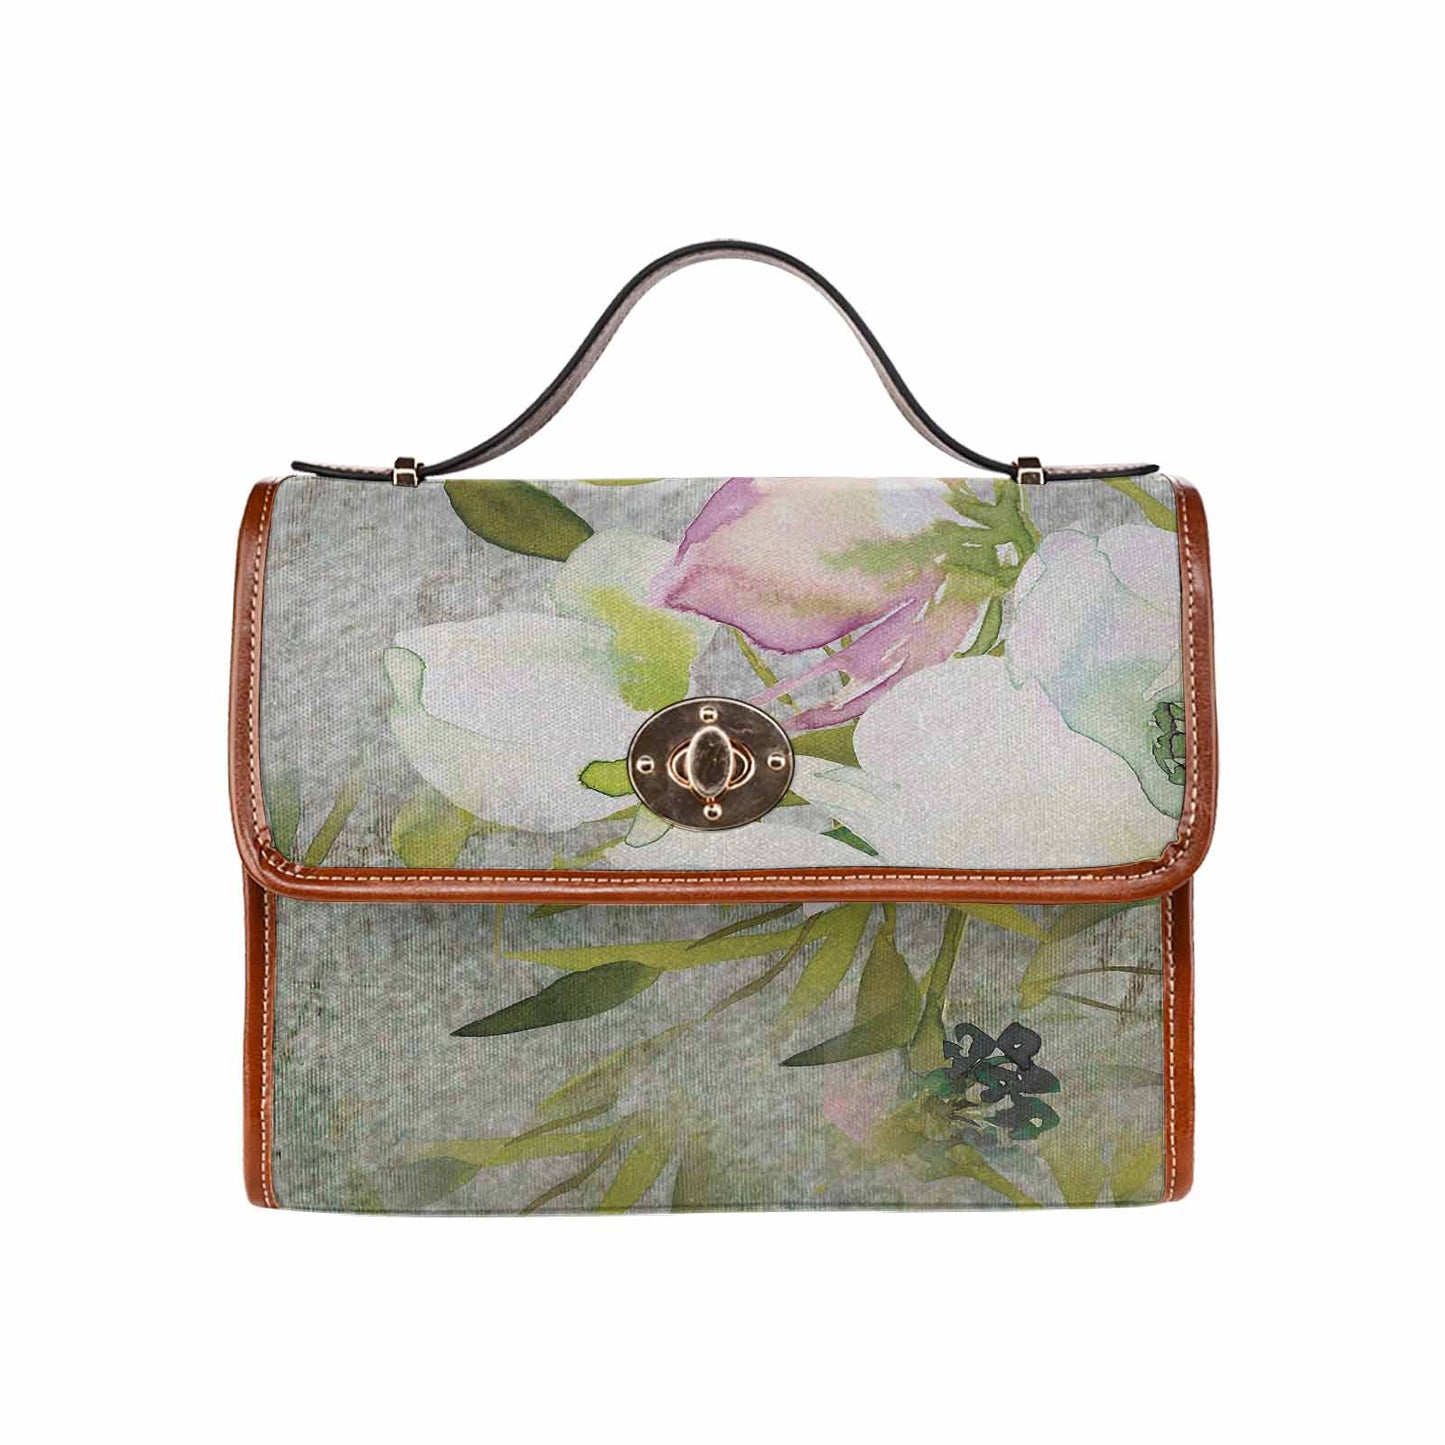 Vintage Floral Handbag, Design 03 Model 1695341 C20